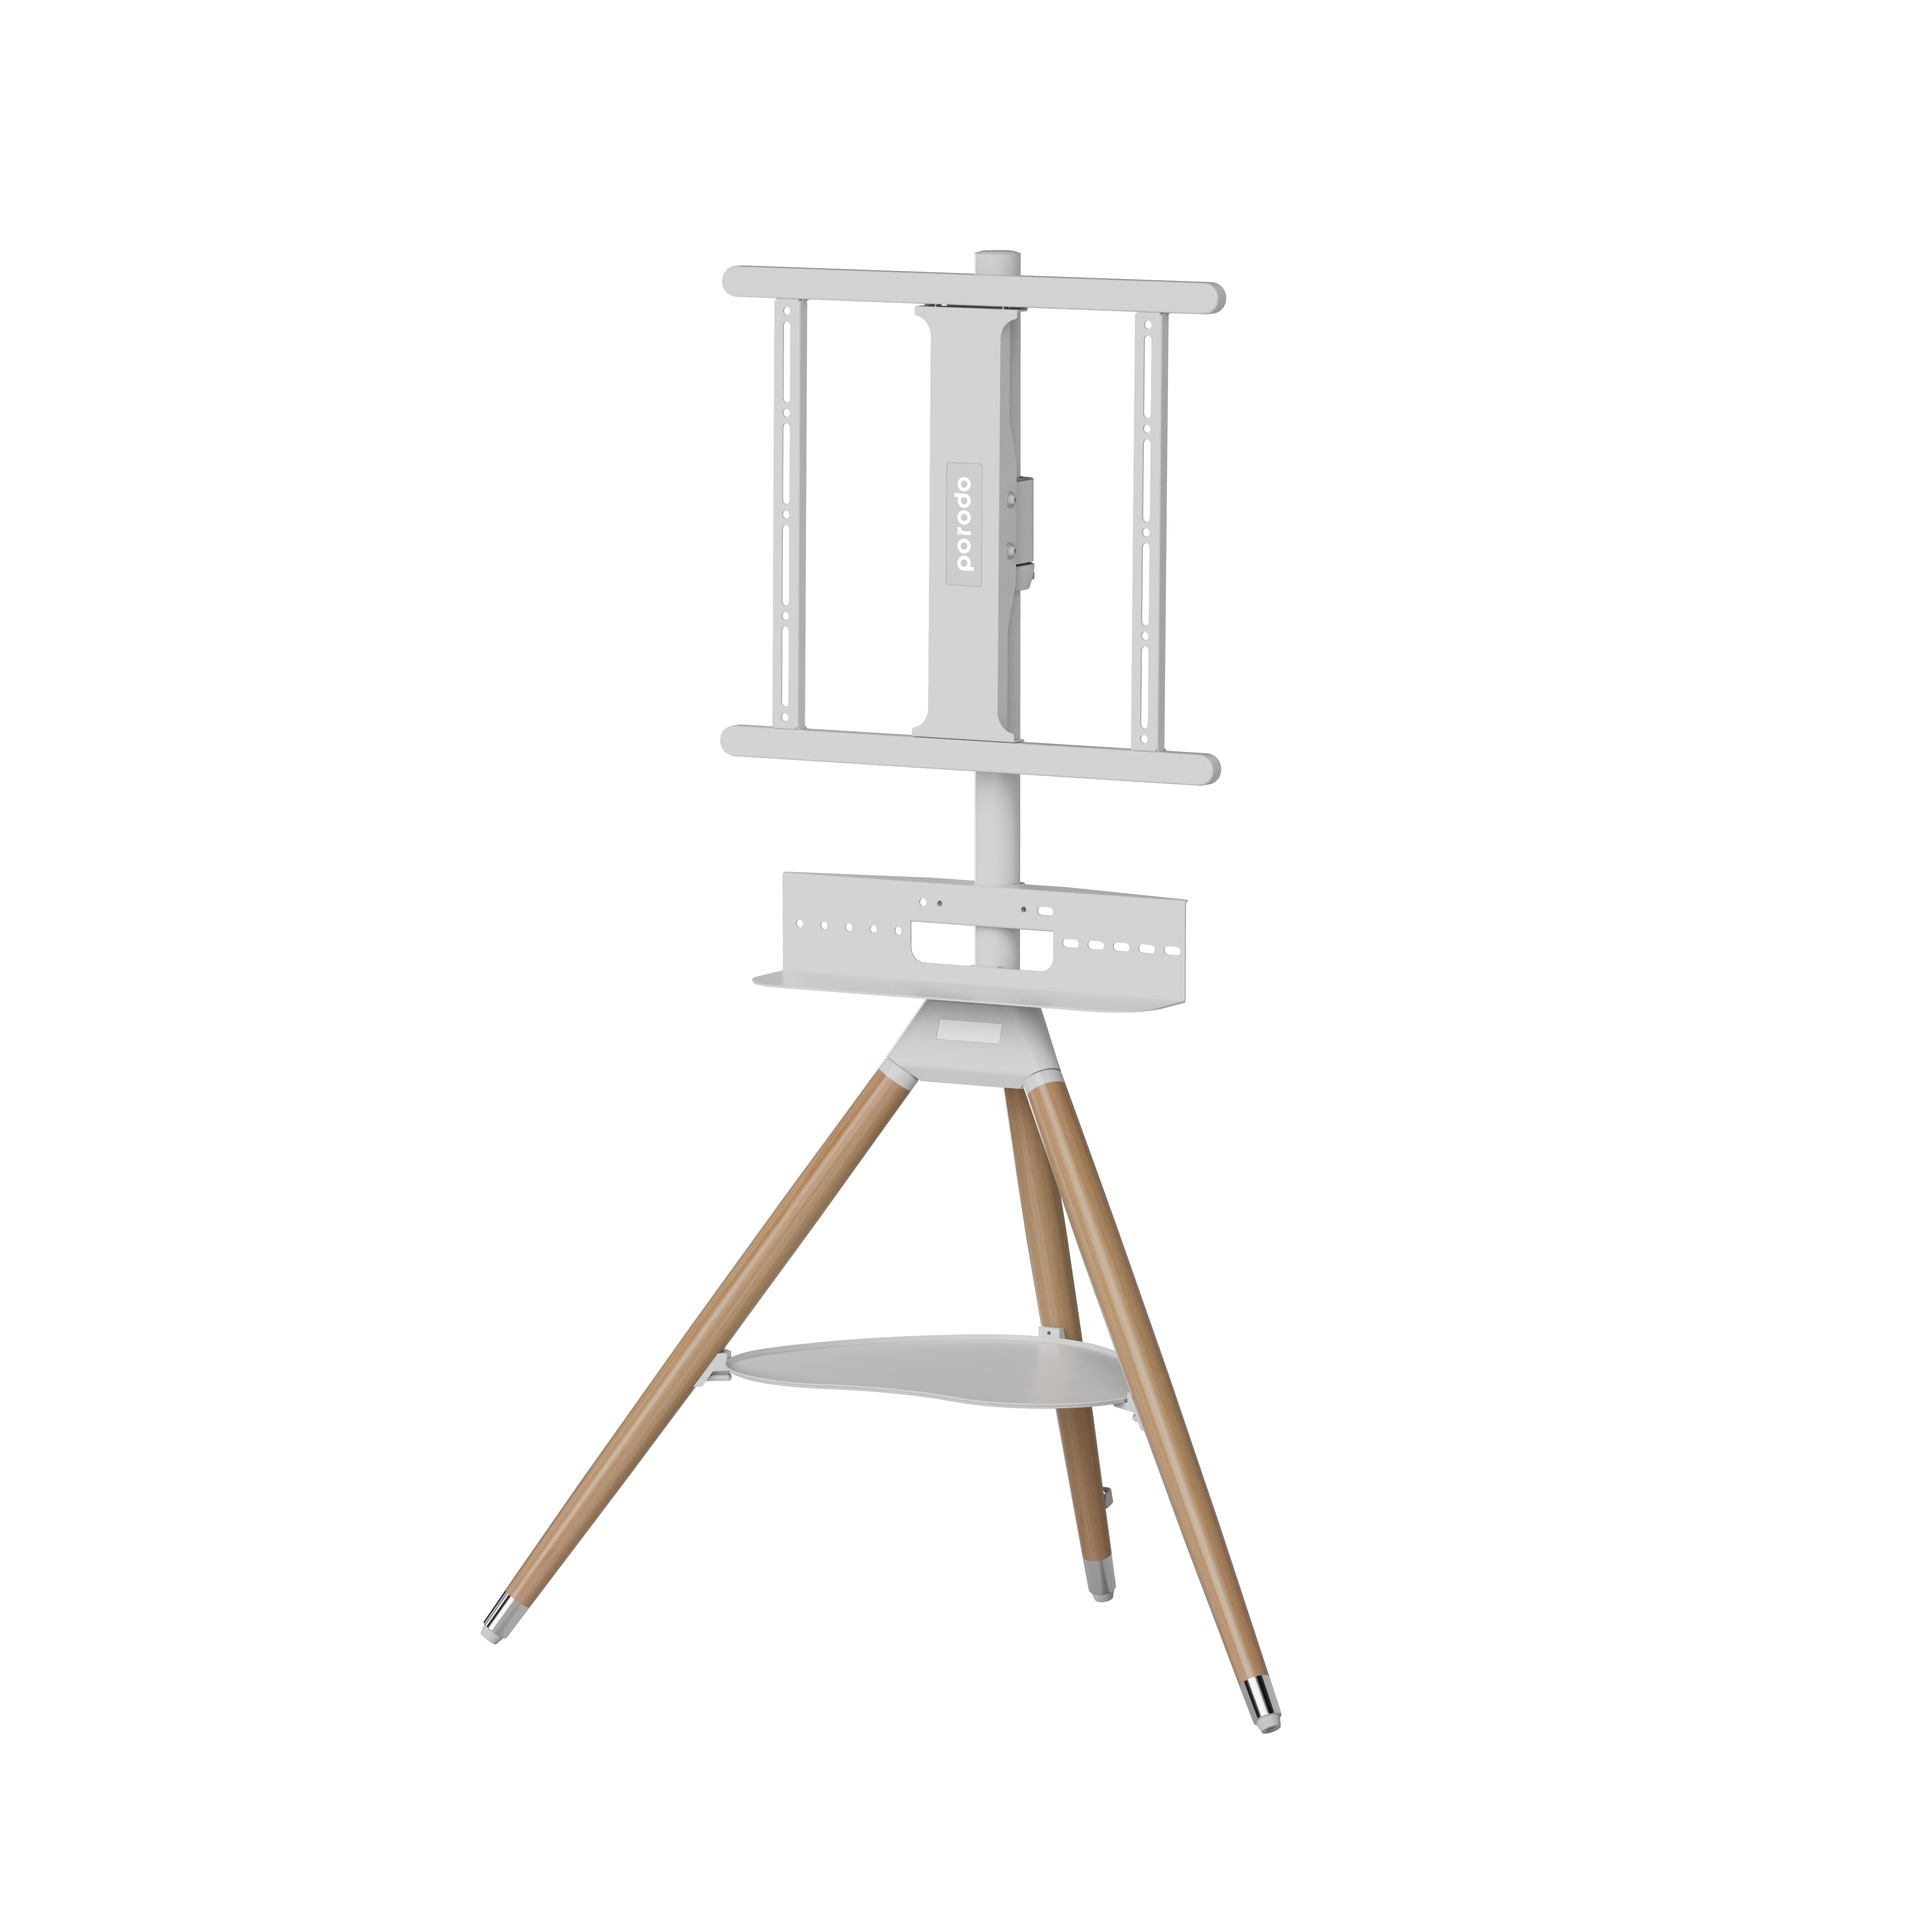 Porodo TV Stand Wooden Vesa Compatible Tripod - White